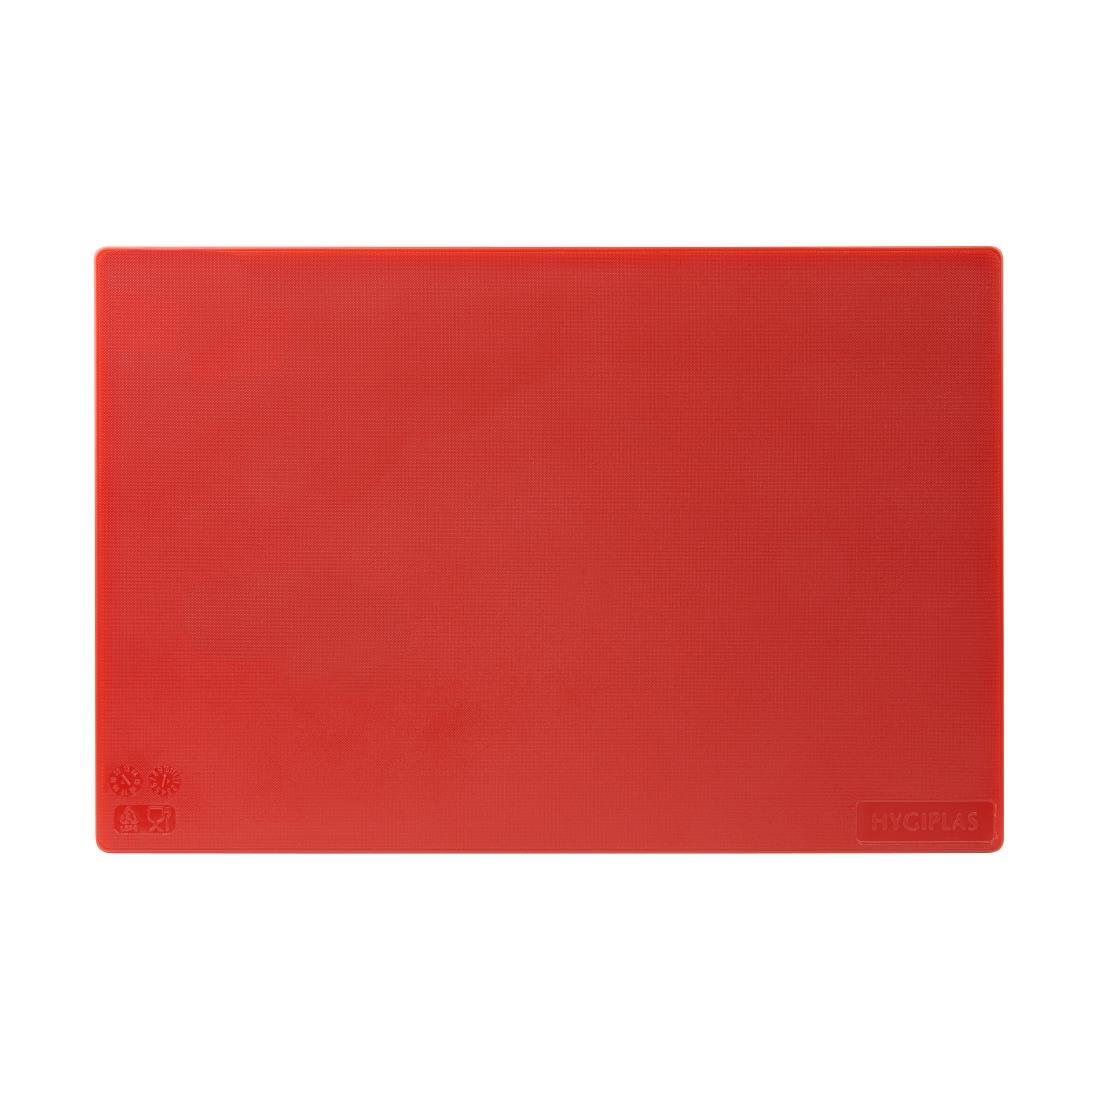 Hygiplas Low Density Red Chopping Board Standard - J255  - 3